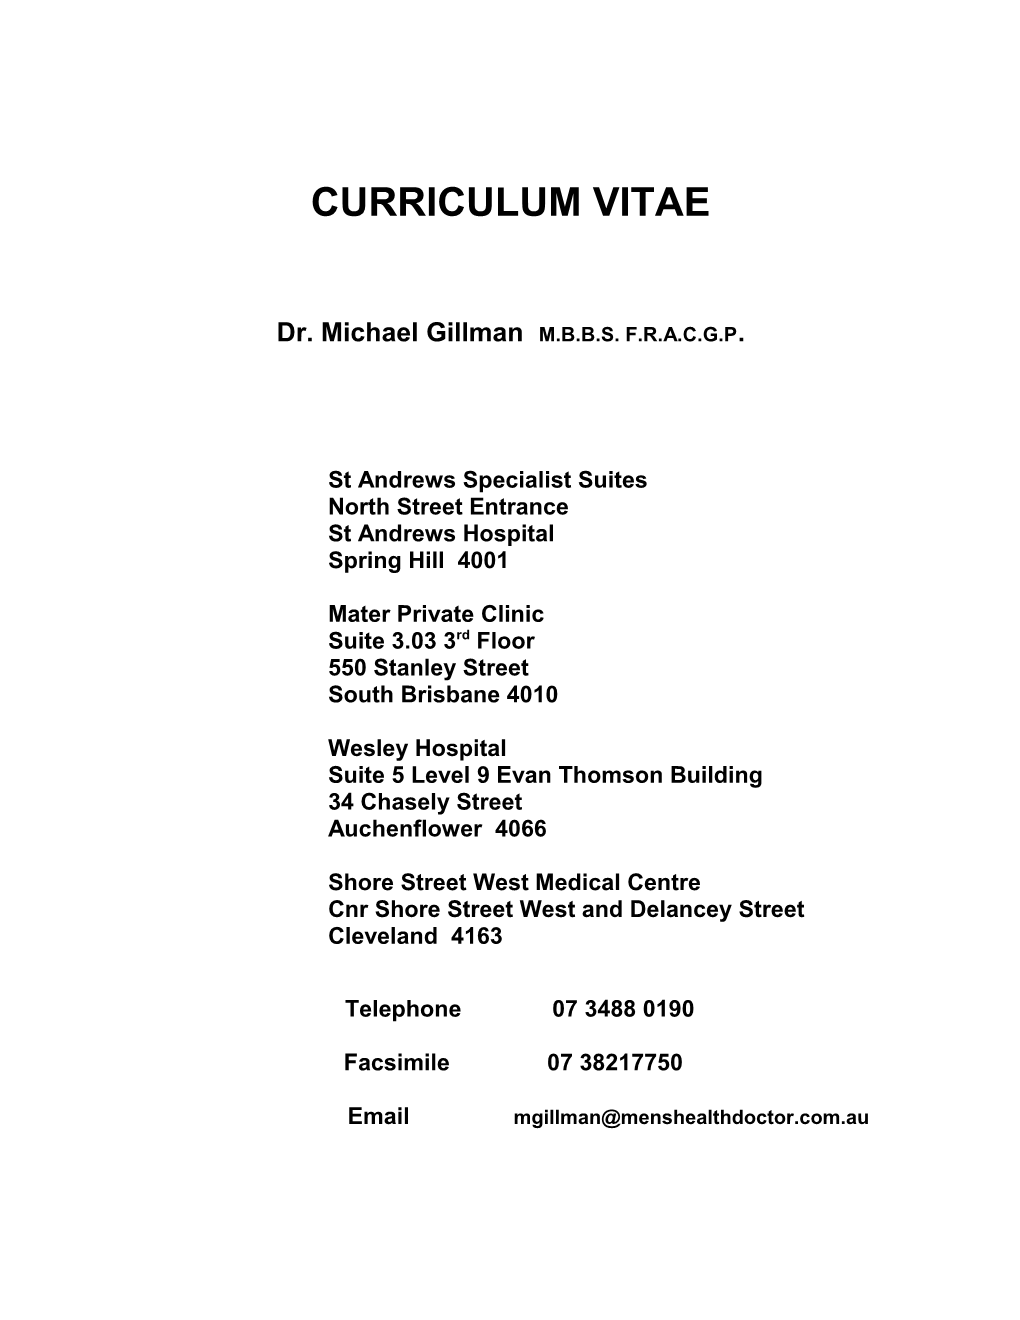 Dr. Michael Gillman M.B.B.S. F.R.A.C.G.P